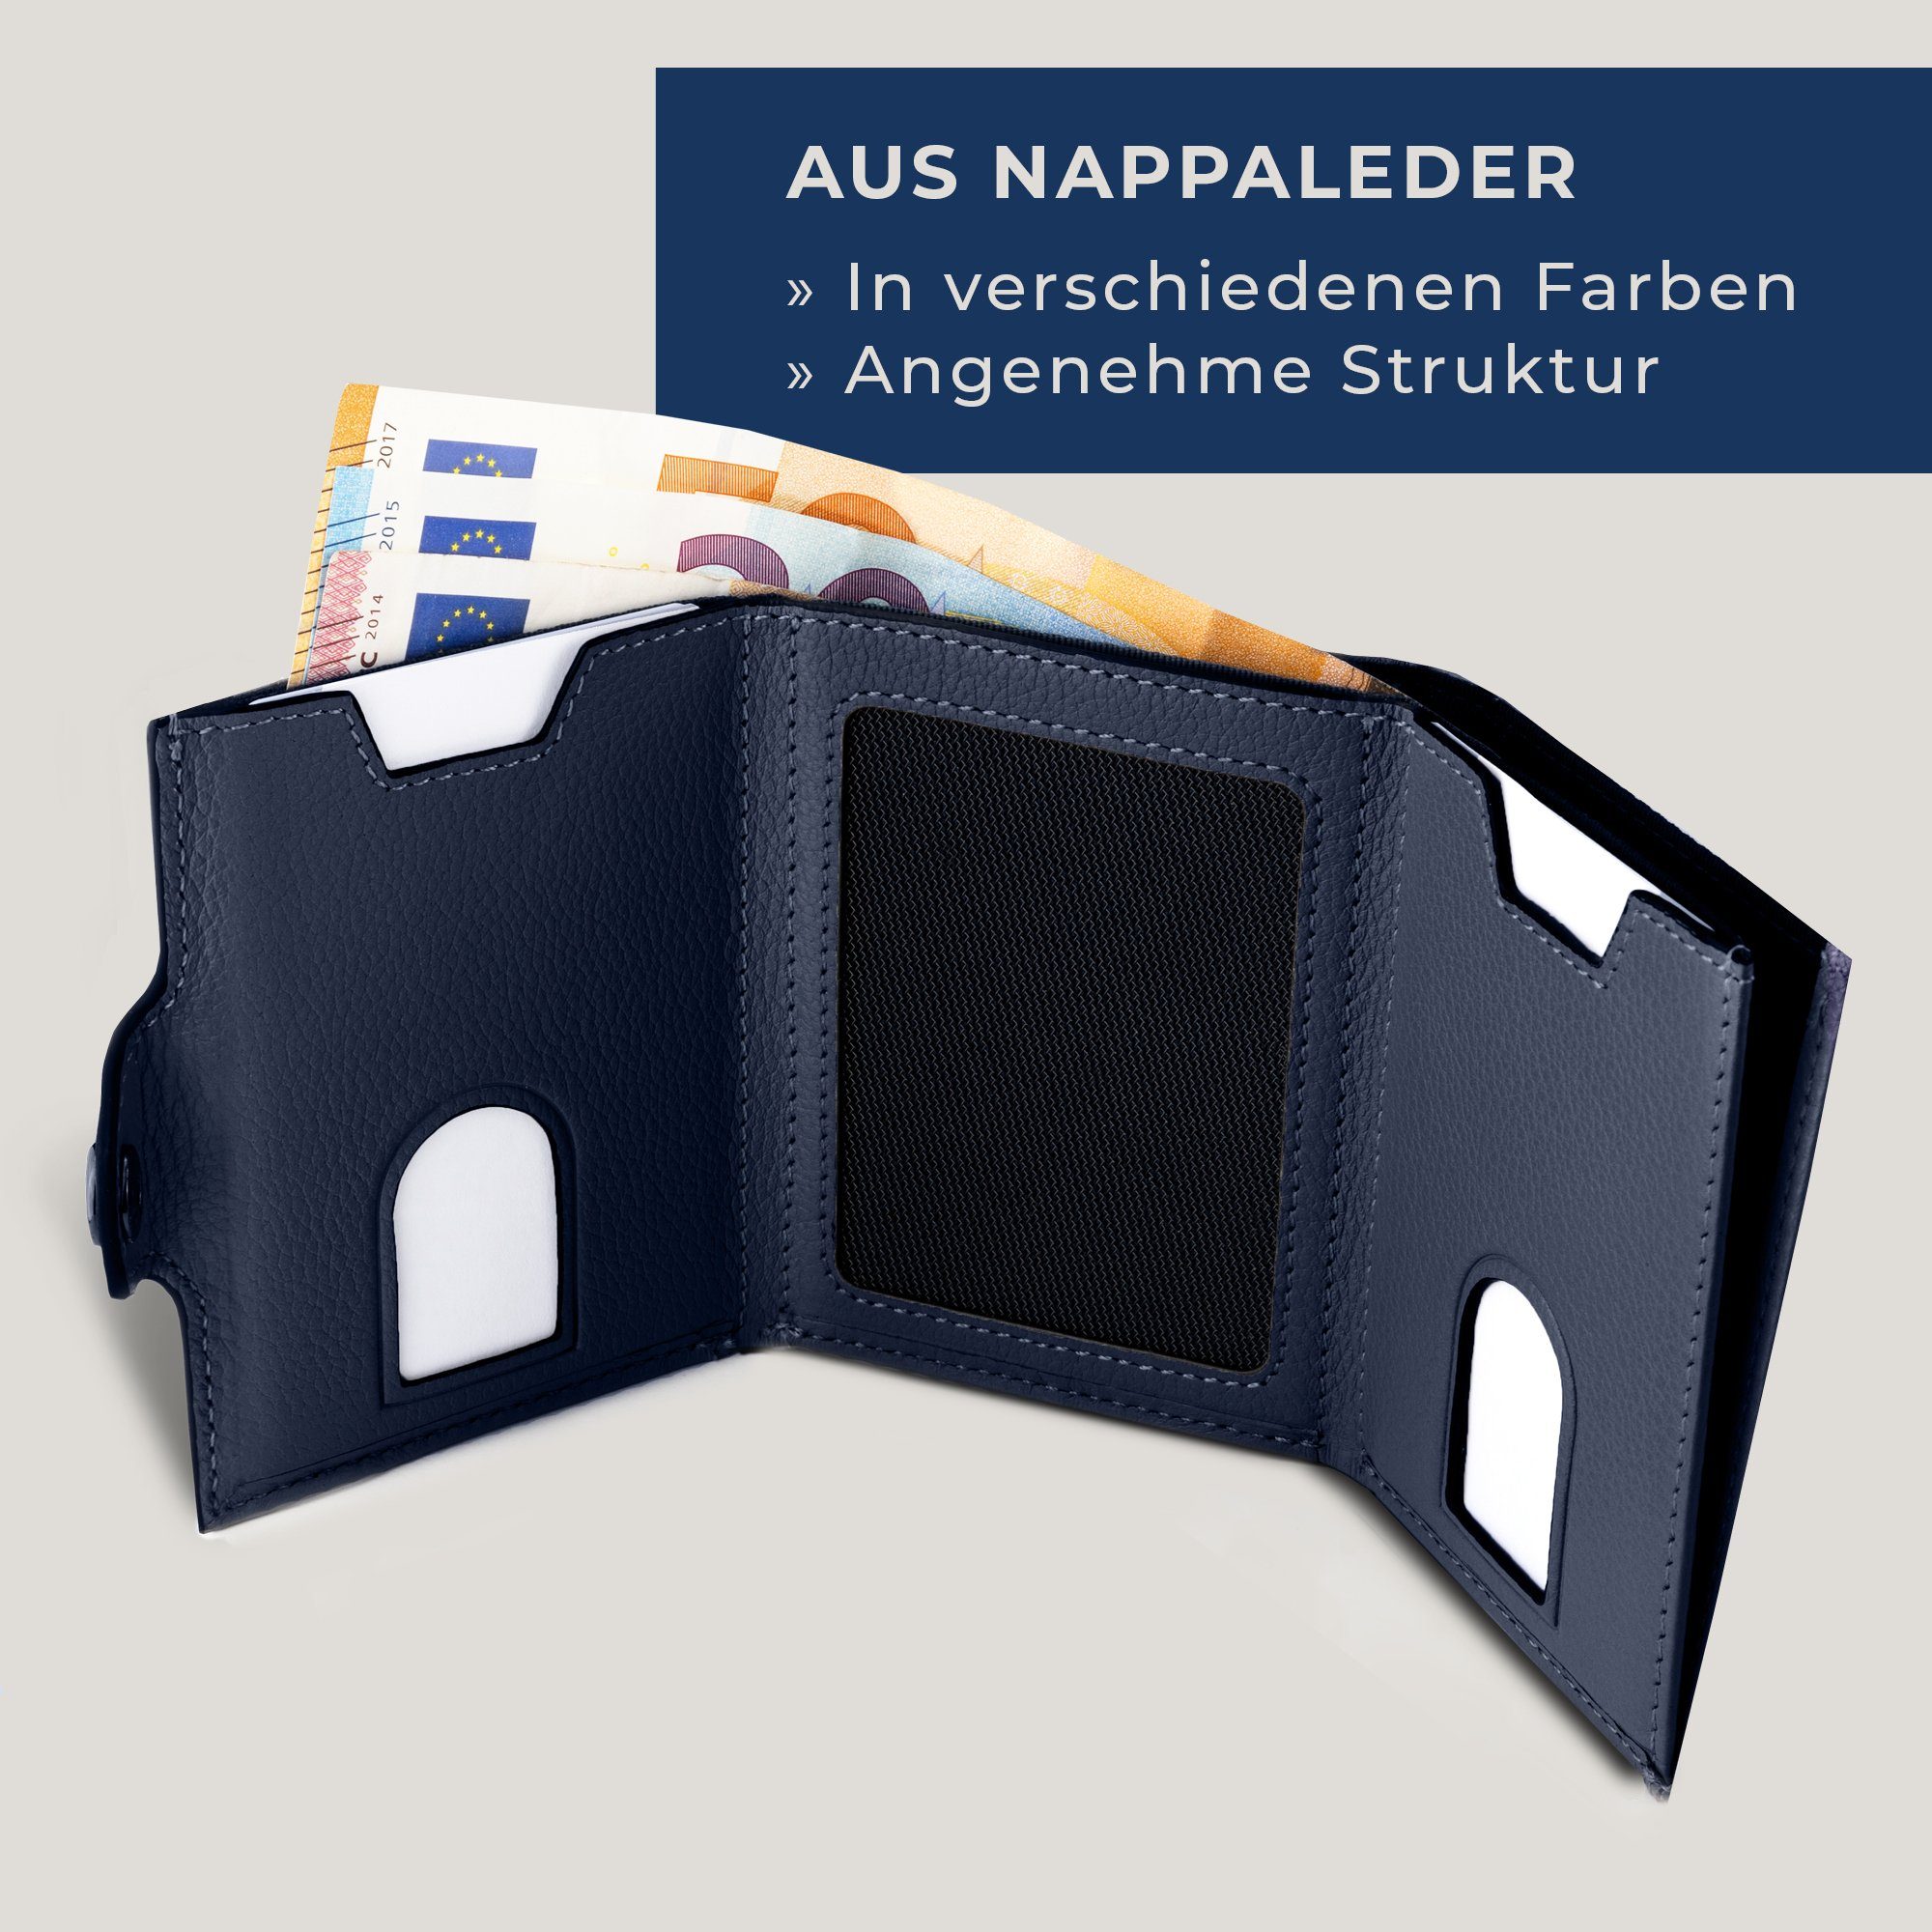 VON HEESEN Geldbörse Whizz Geschenkbox Slim RFID-Schutz Wallet Blau 6 Geldbeutel Wallet & inkl. Kartenfächer, Portemonnaie mit